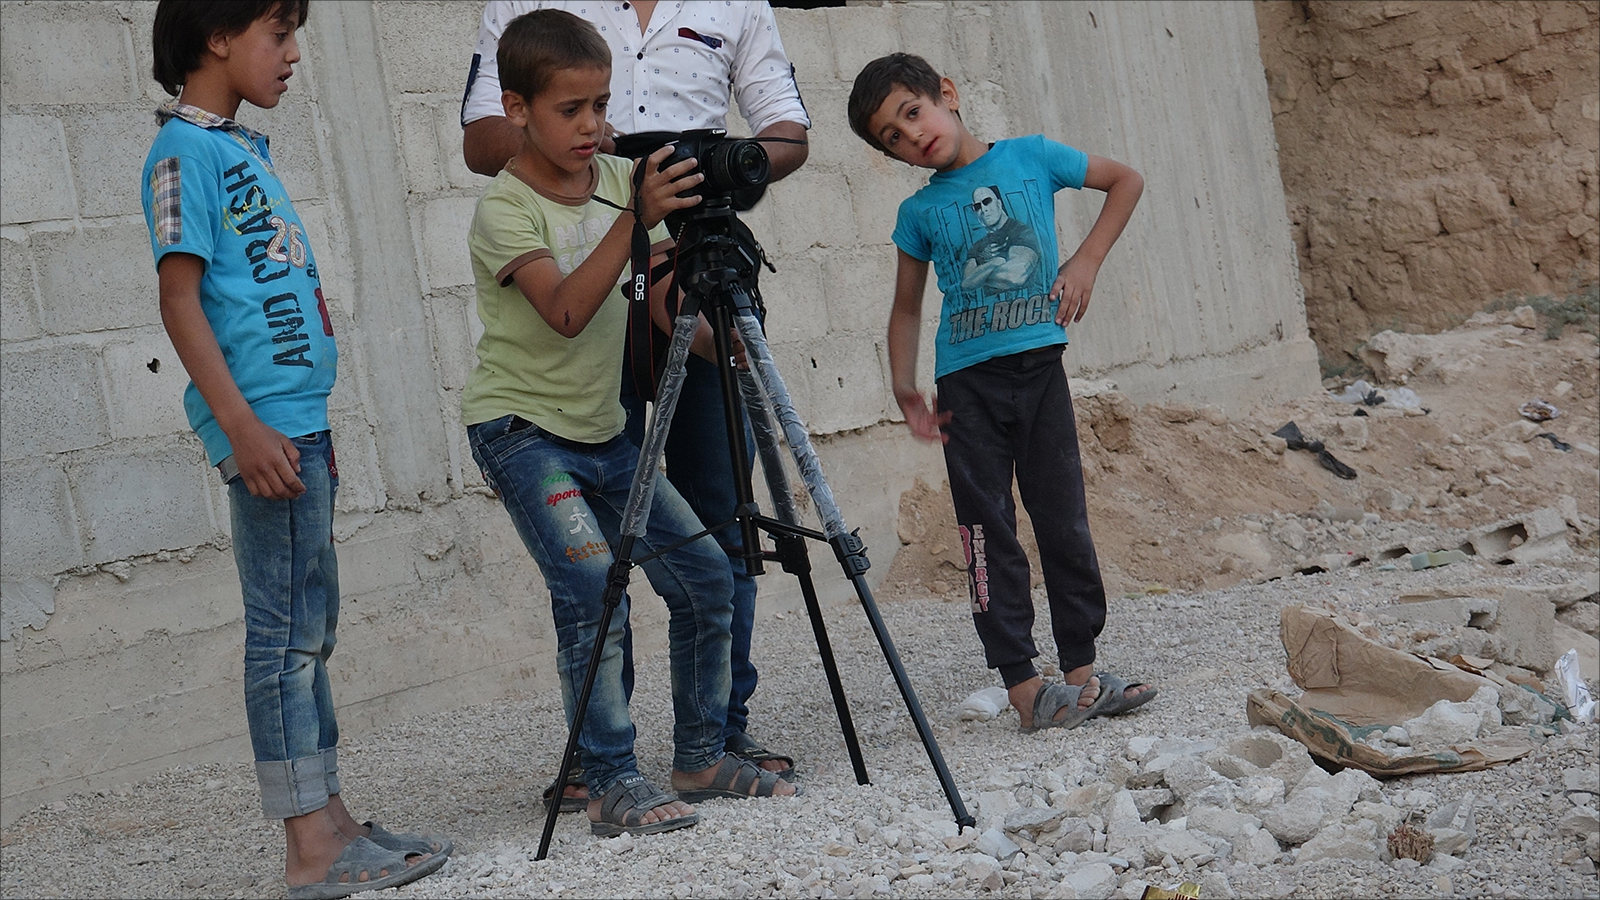 الفيلم مثقل بقصص مؤثرة لأطفال سوريا كما يقول المنتجون (الجزيرة)